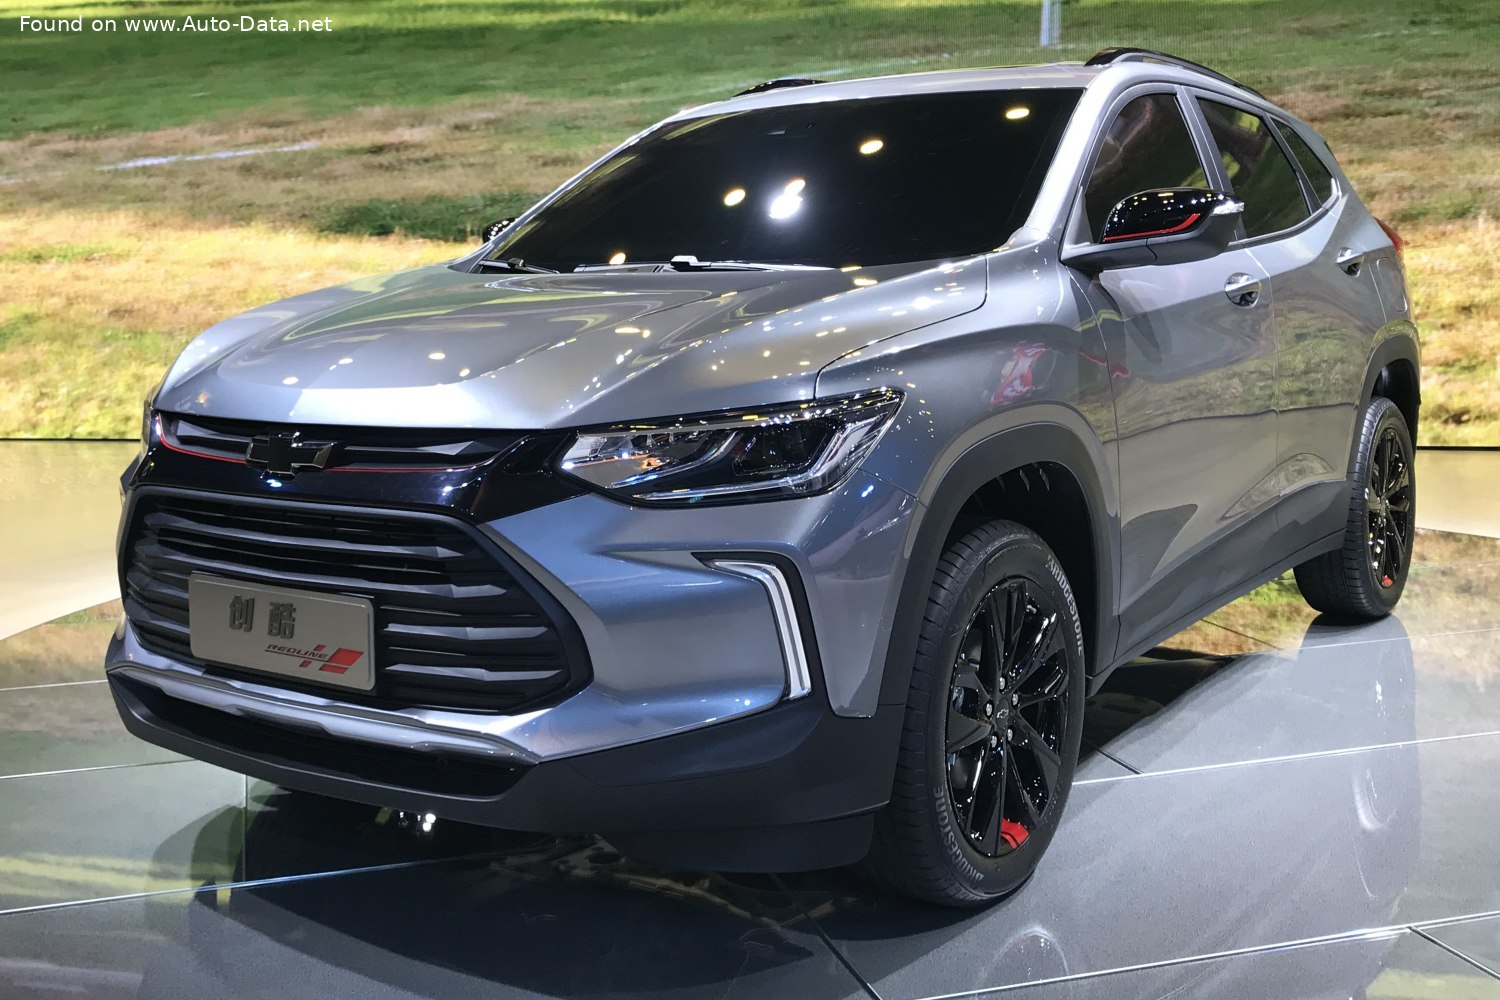 2019 Chevrolet Tracker (2019) 325T Ecotec (125 Hp) DSS | Technical specs,  data, fuel consumption, Dimensions